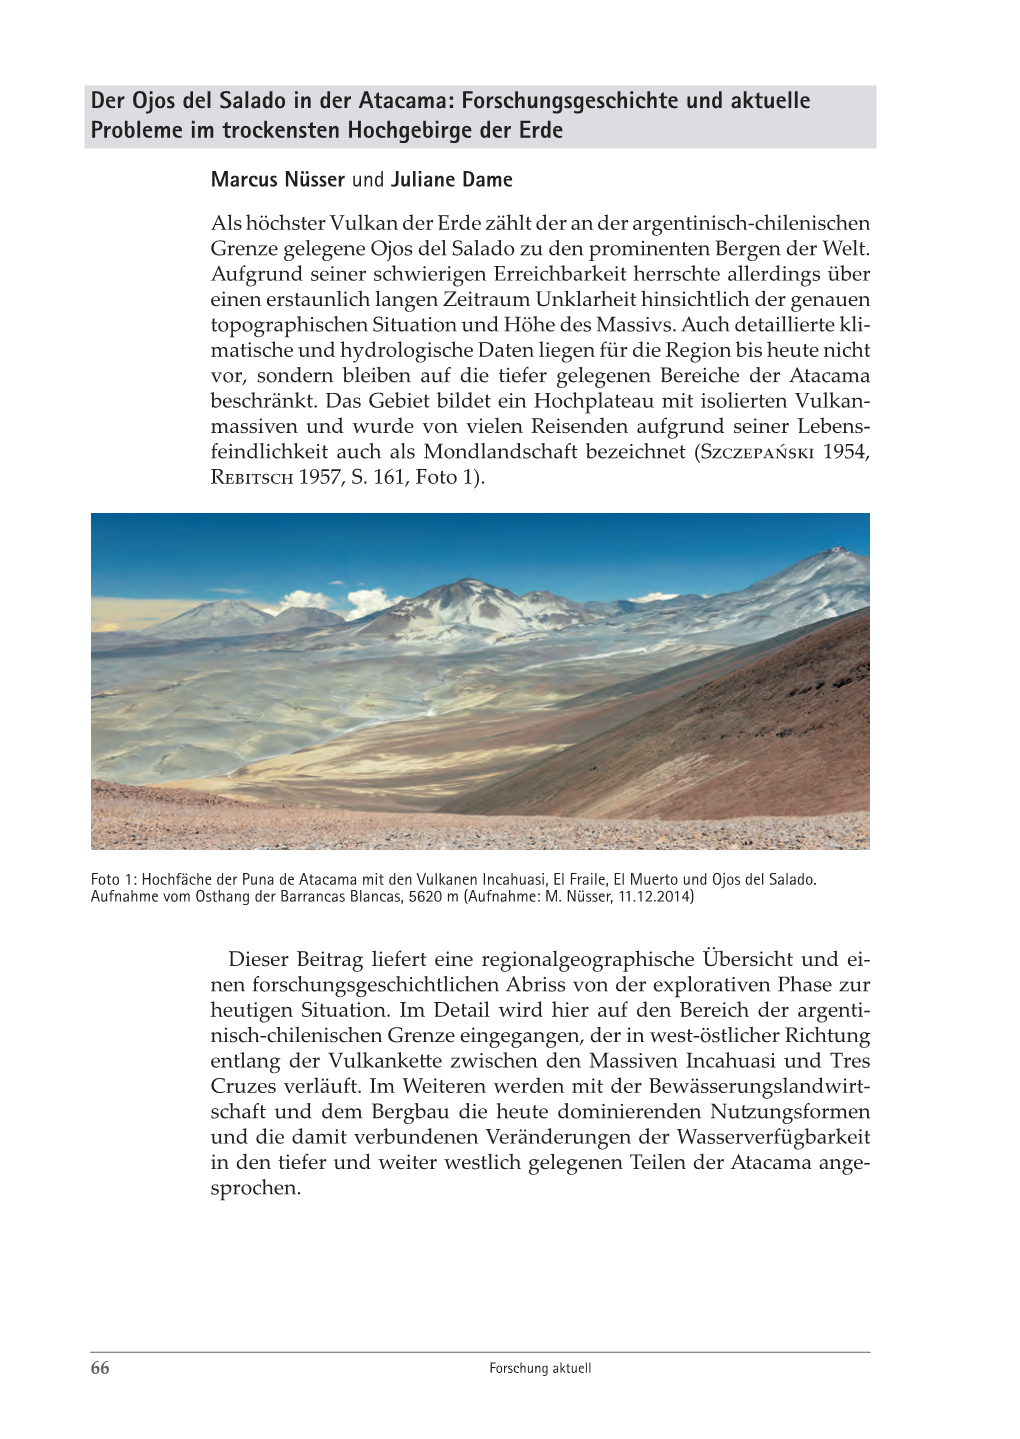 Der Ojos Del Salado in Der Atacama: Forschungsgeschichte Und Aktuelle Probleme Im Trockensten Hochgebirge Der Erde